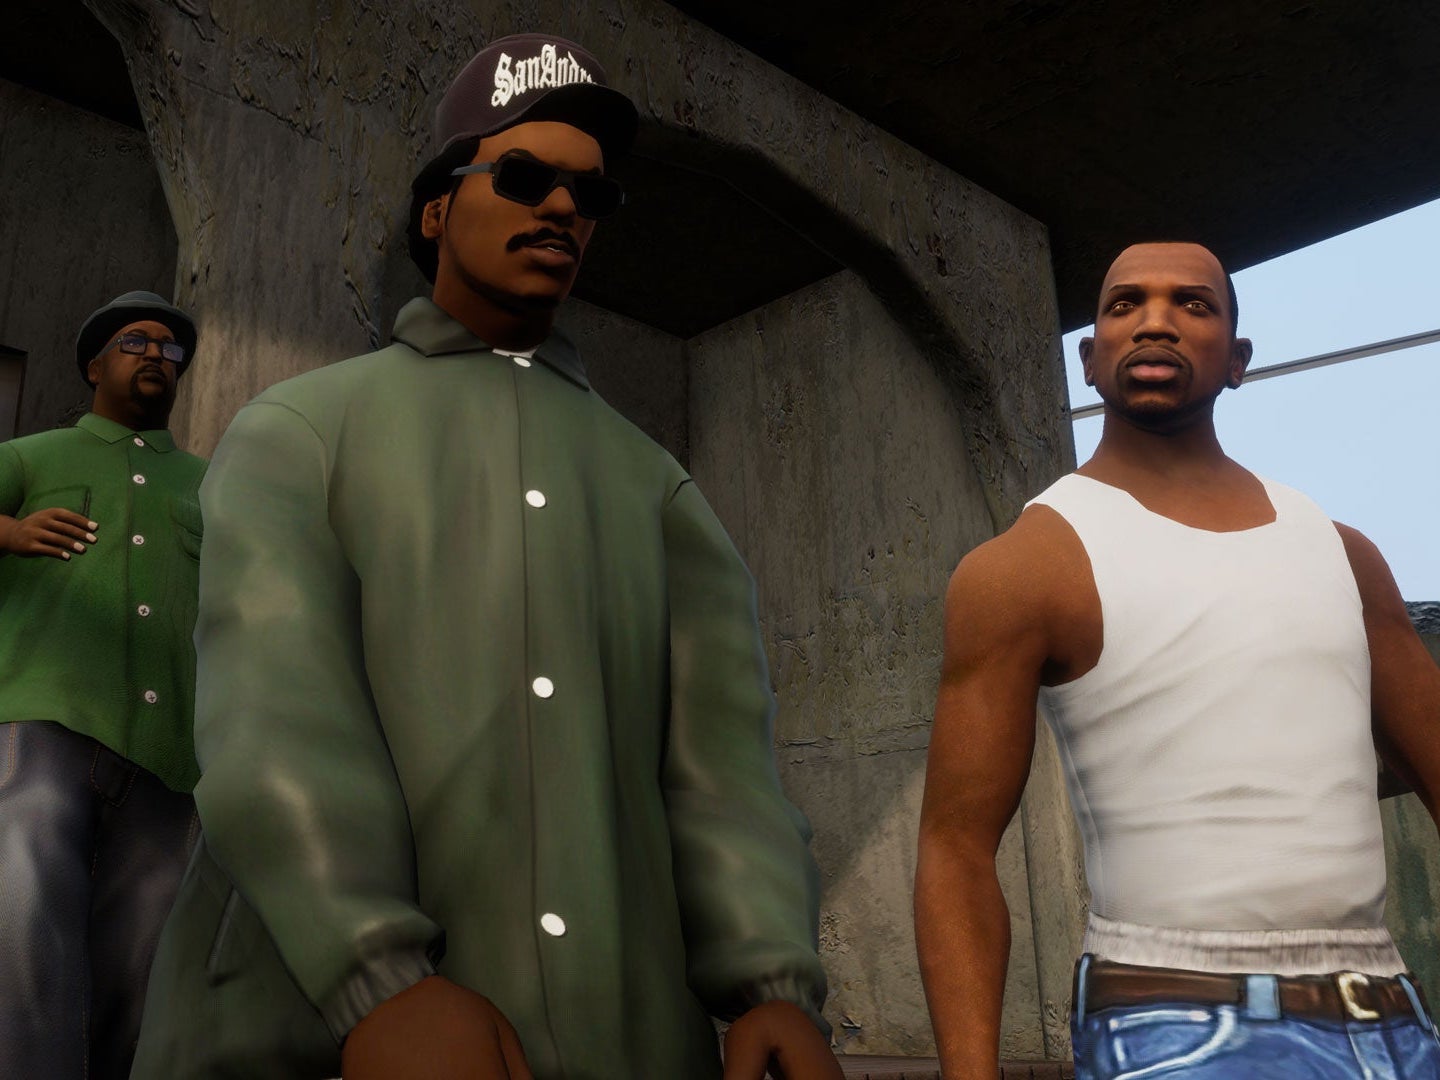 G1 - Conheça todos os jogos da série 'Grand Theft Auto' - notícias em Games